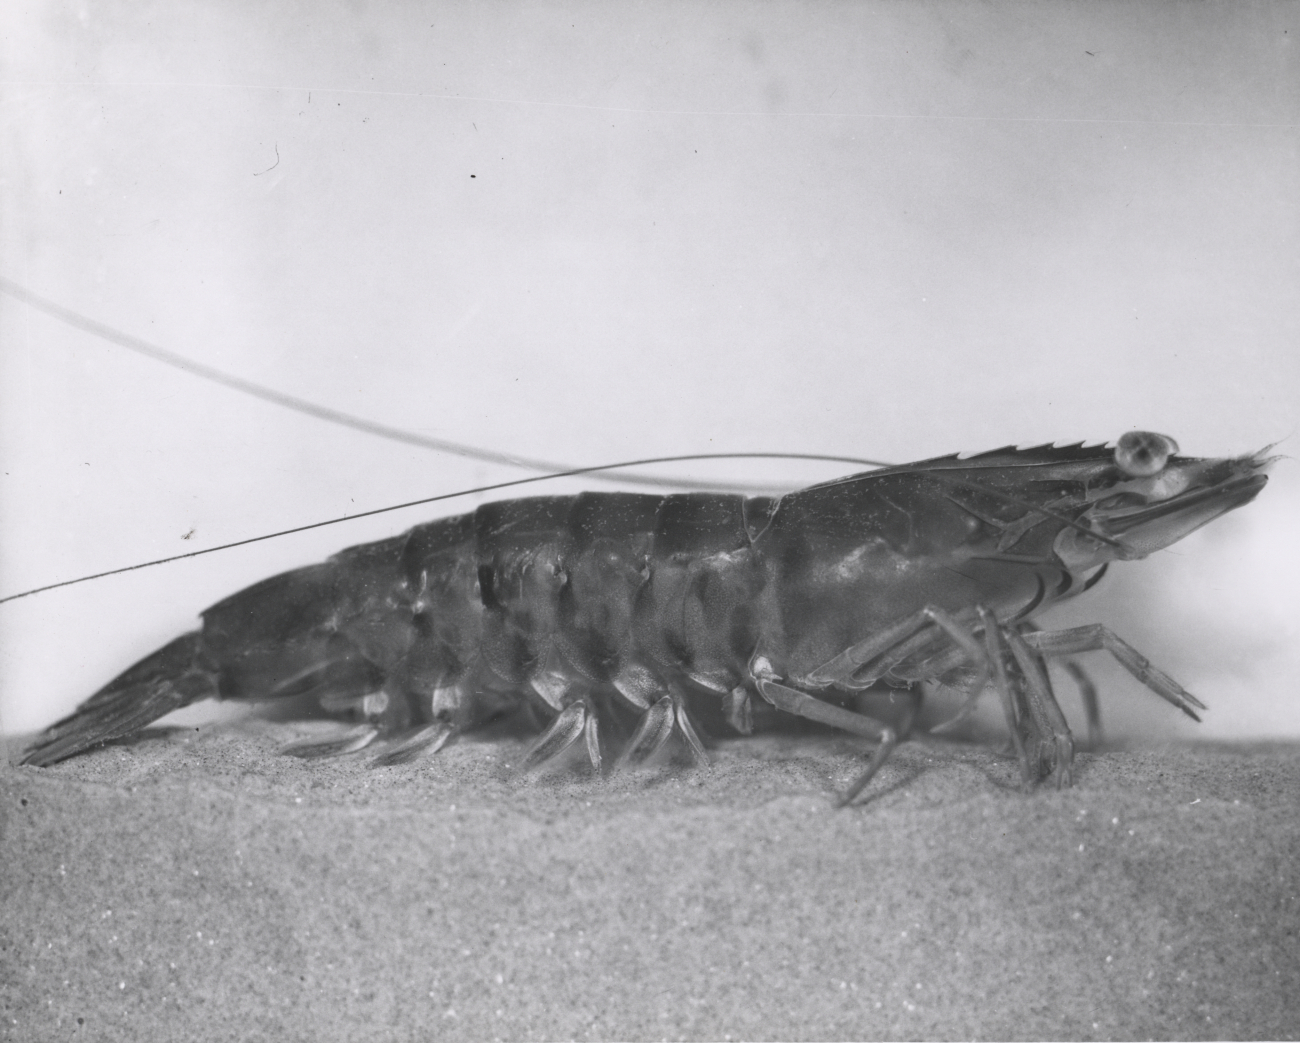 A jumbo shrimp